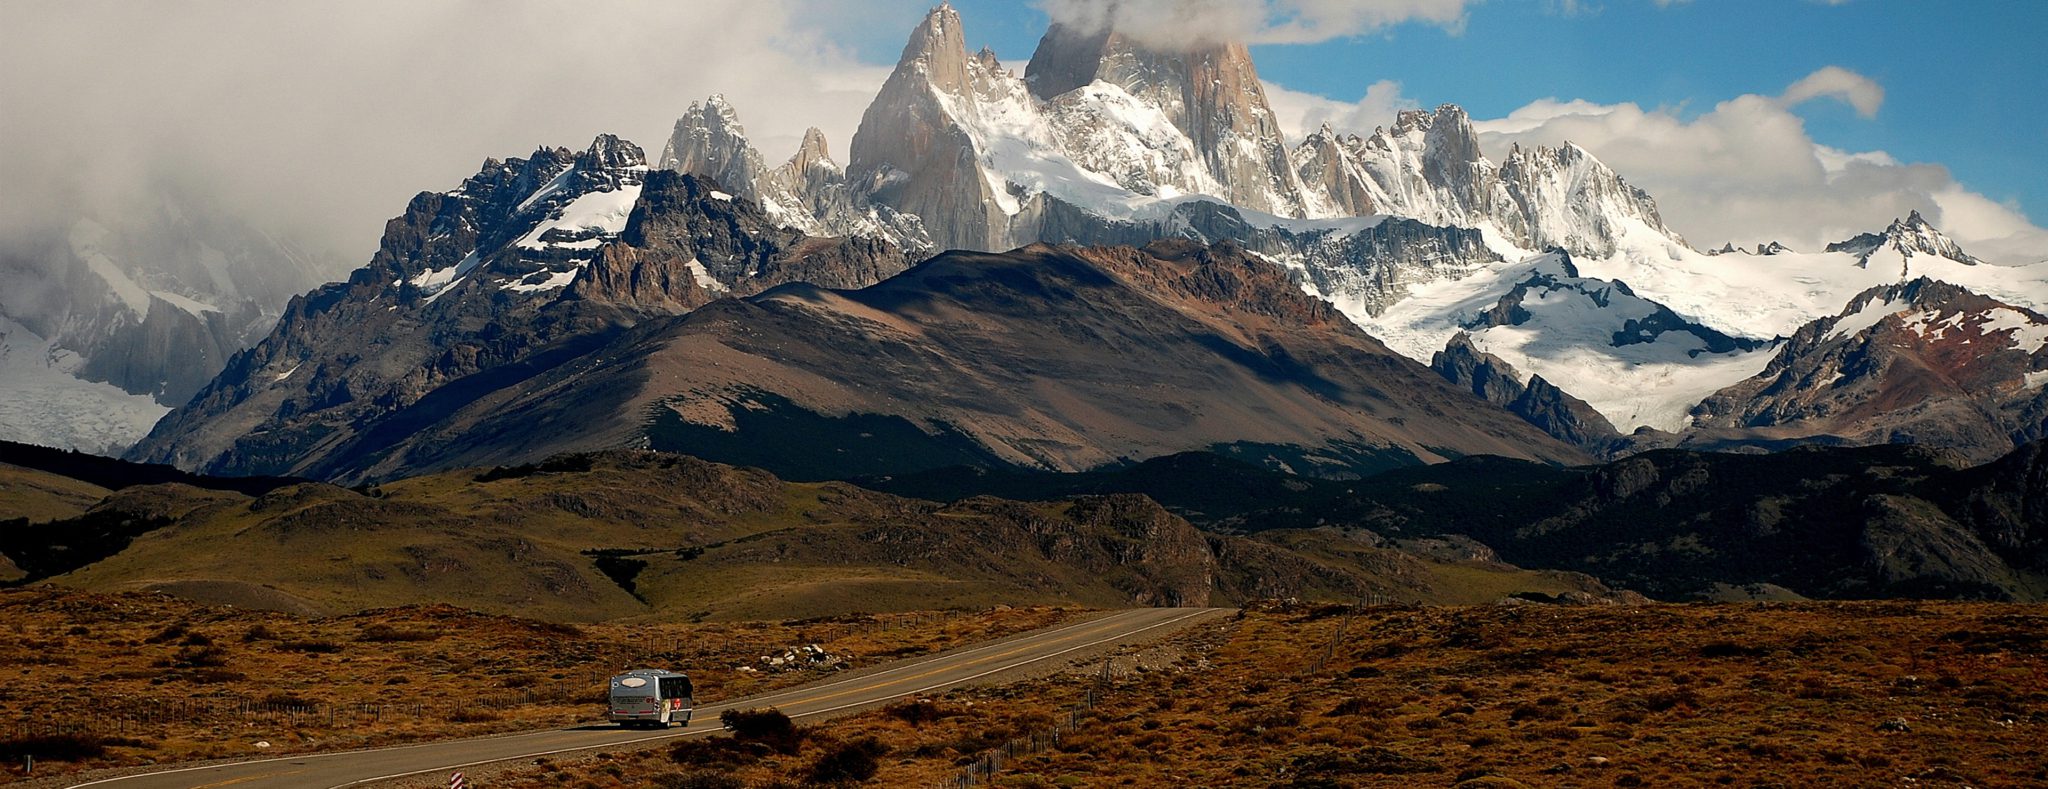 Rondreis door Patagonië - natuurlijke highlights